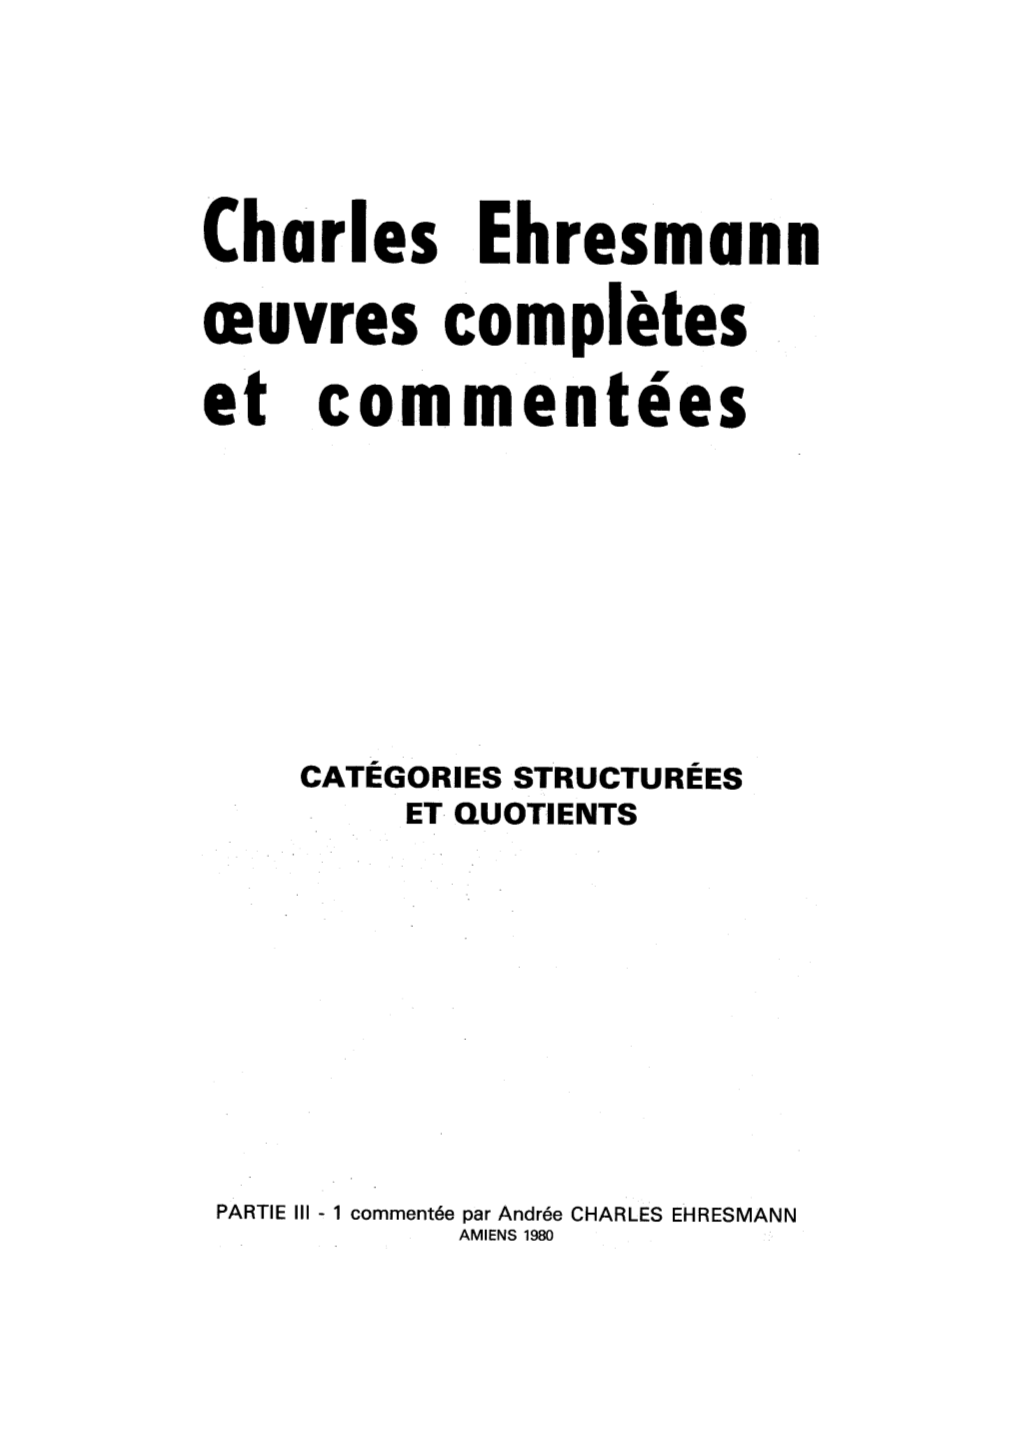 Charles Ehresmann Et Commentées